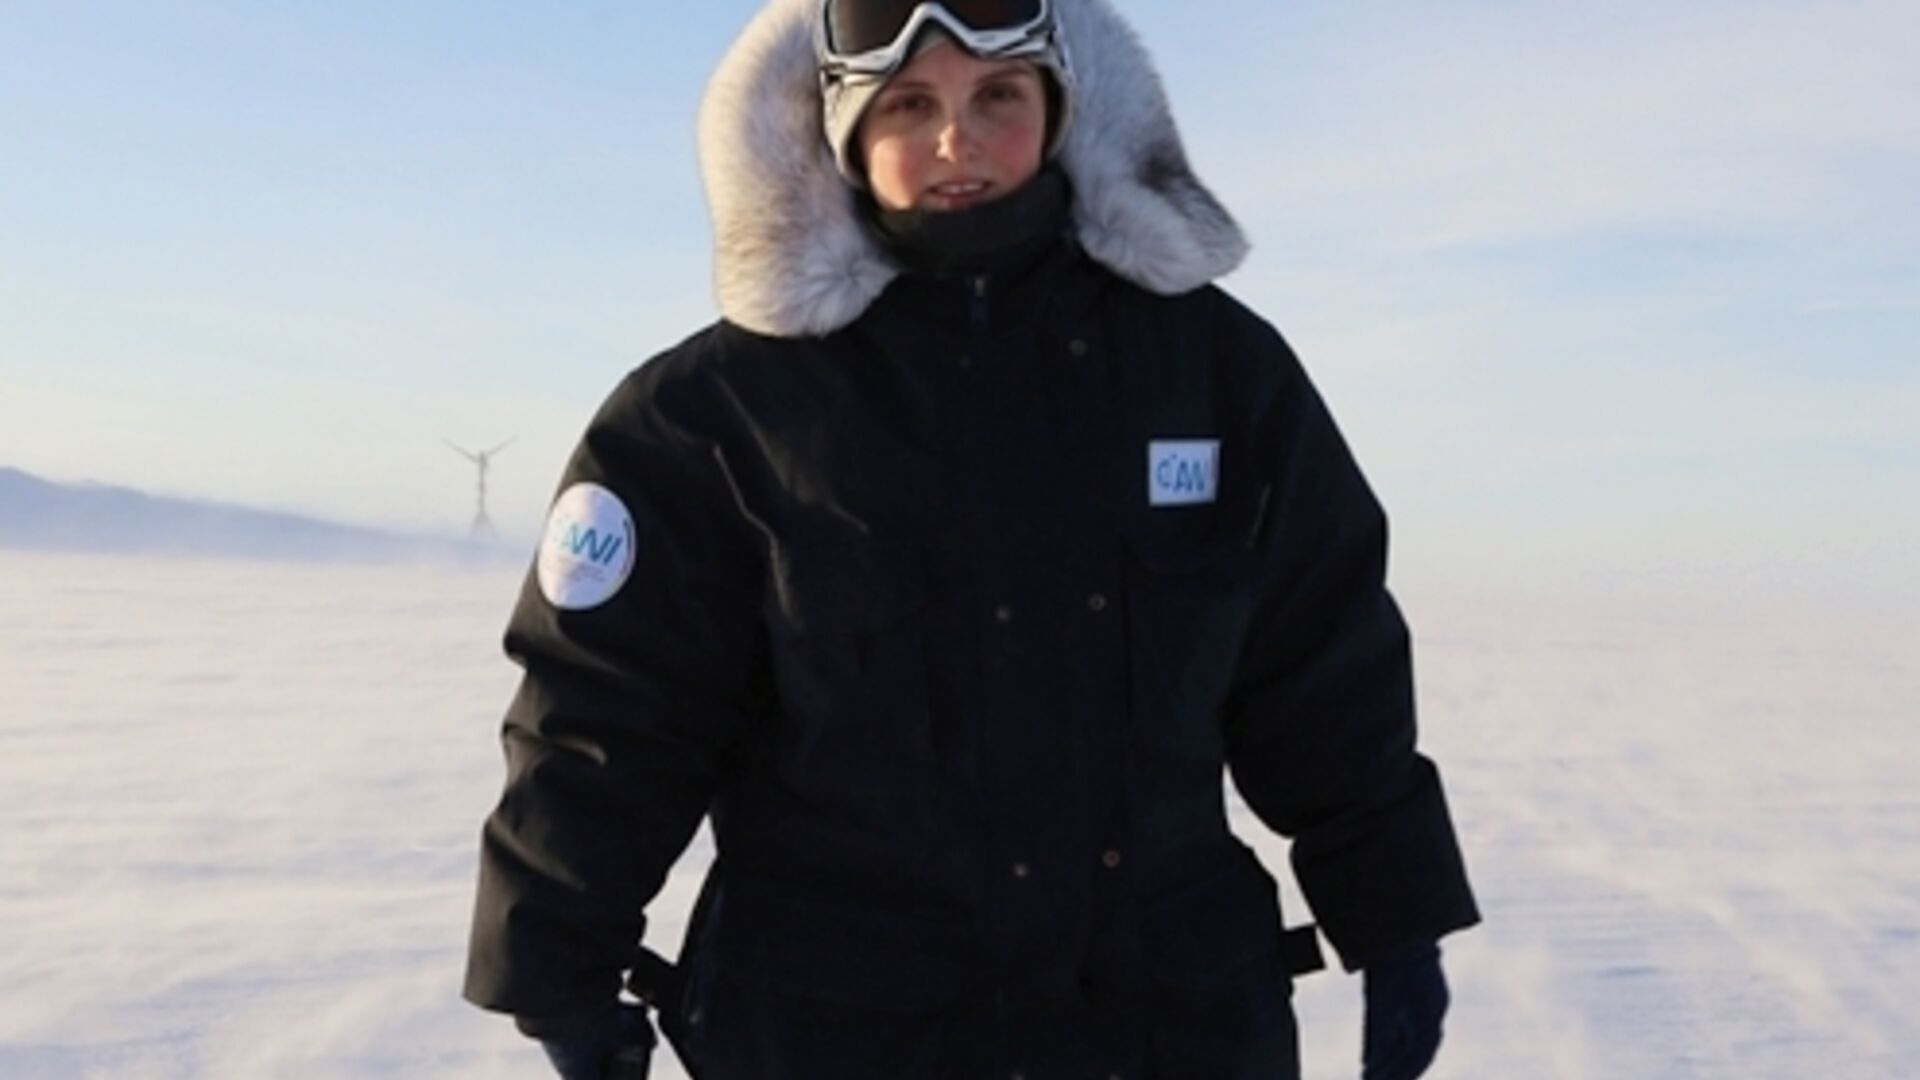 پلاستیک: کار میدانی: محقق قطب شمال و رئیس رصدخانه کوه "هوهر سونبلیک"، الکه لودویگ، نمونه های نانوپلاستیک را به همراه تیم کاری خود جمع آوری کرد: پیش از این، این محقق با استعداد در ایستگاه تحقیقاتی قطب آلمان در قطب جنوب کار می کرد.